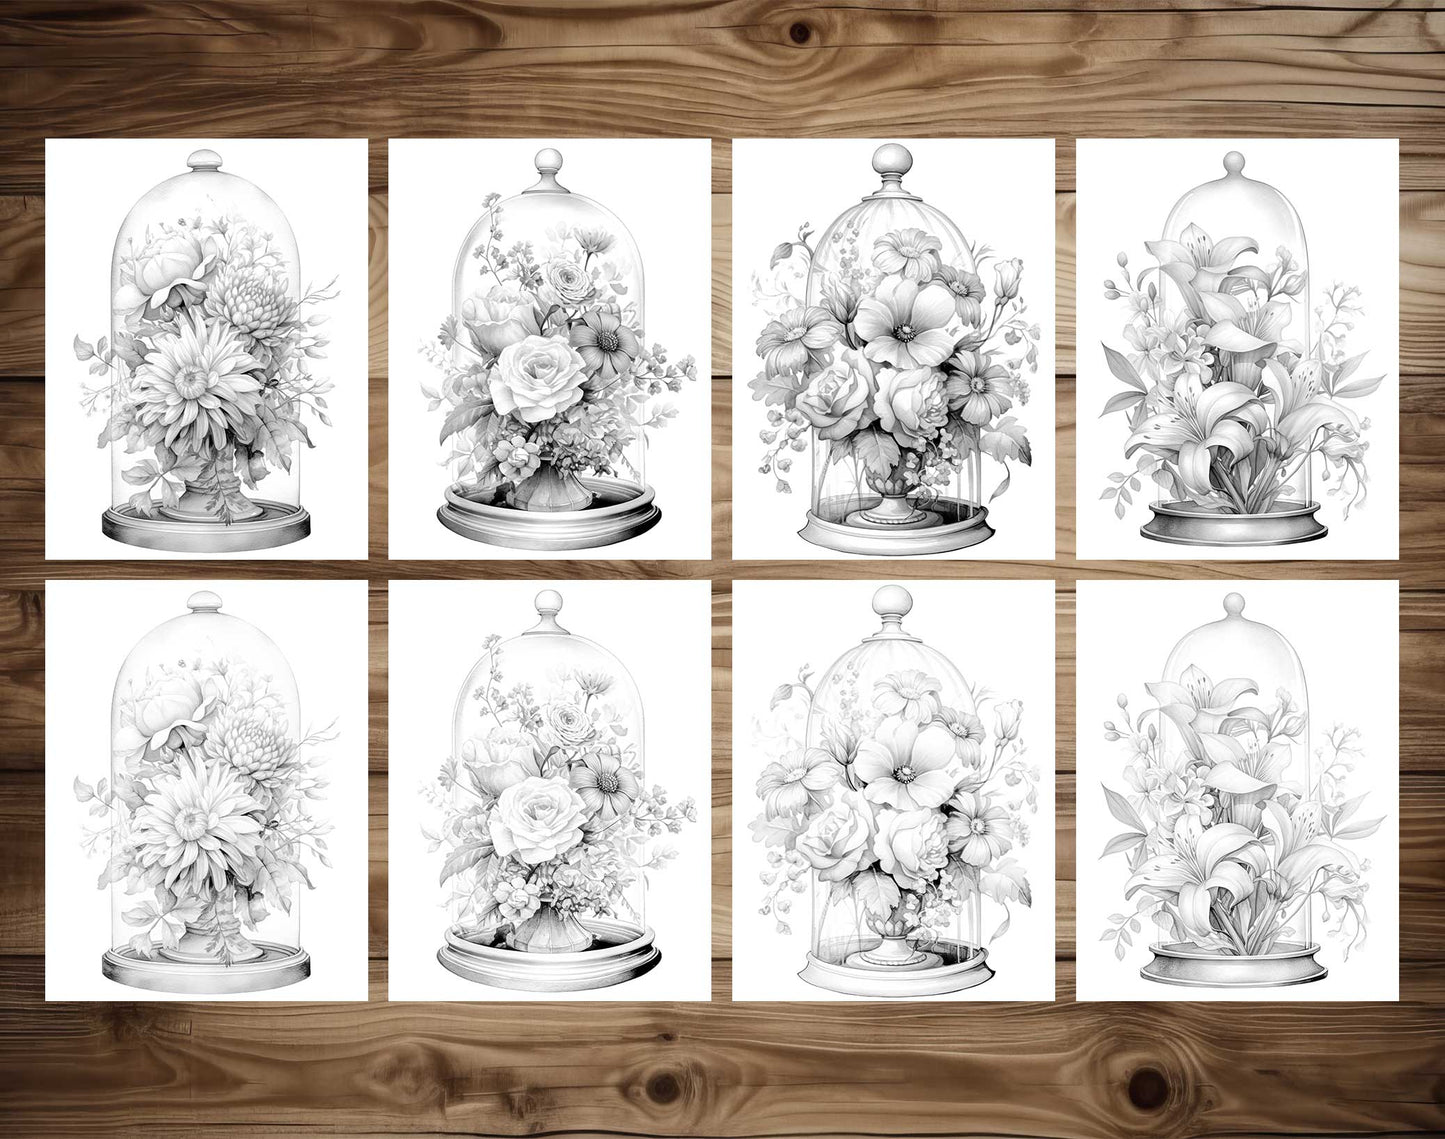 25 adorables bébés anges à colorier en niveaux de gris - Téléchargement immédiat - PDF imprimable